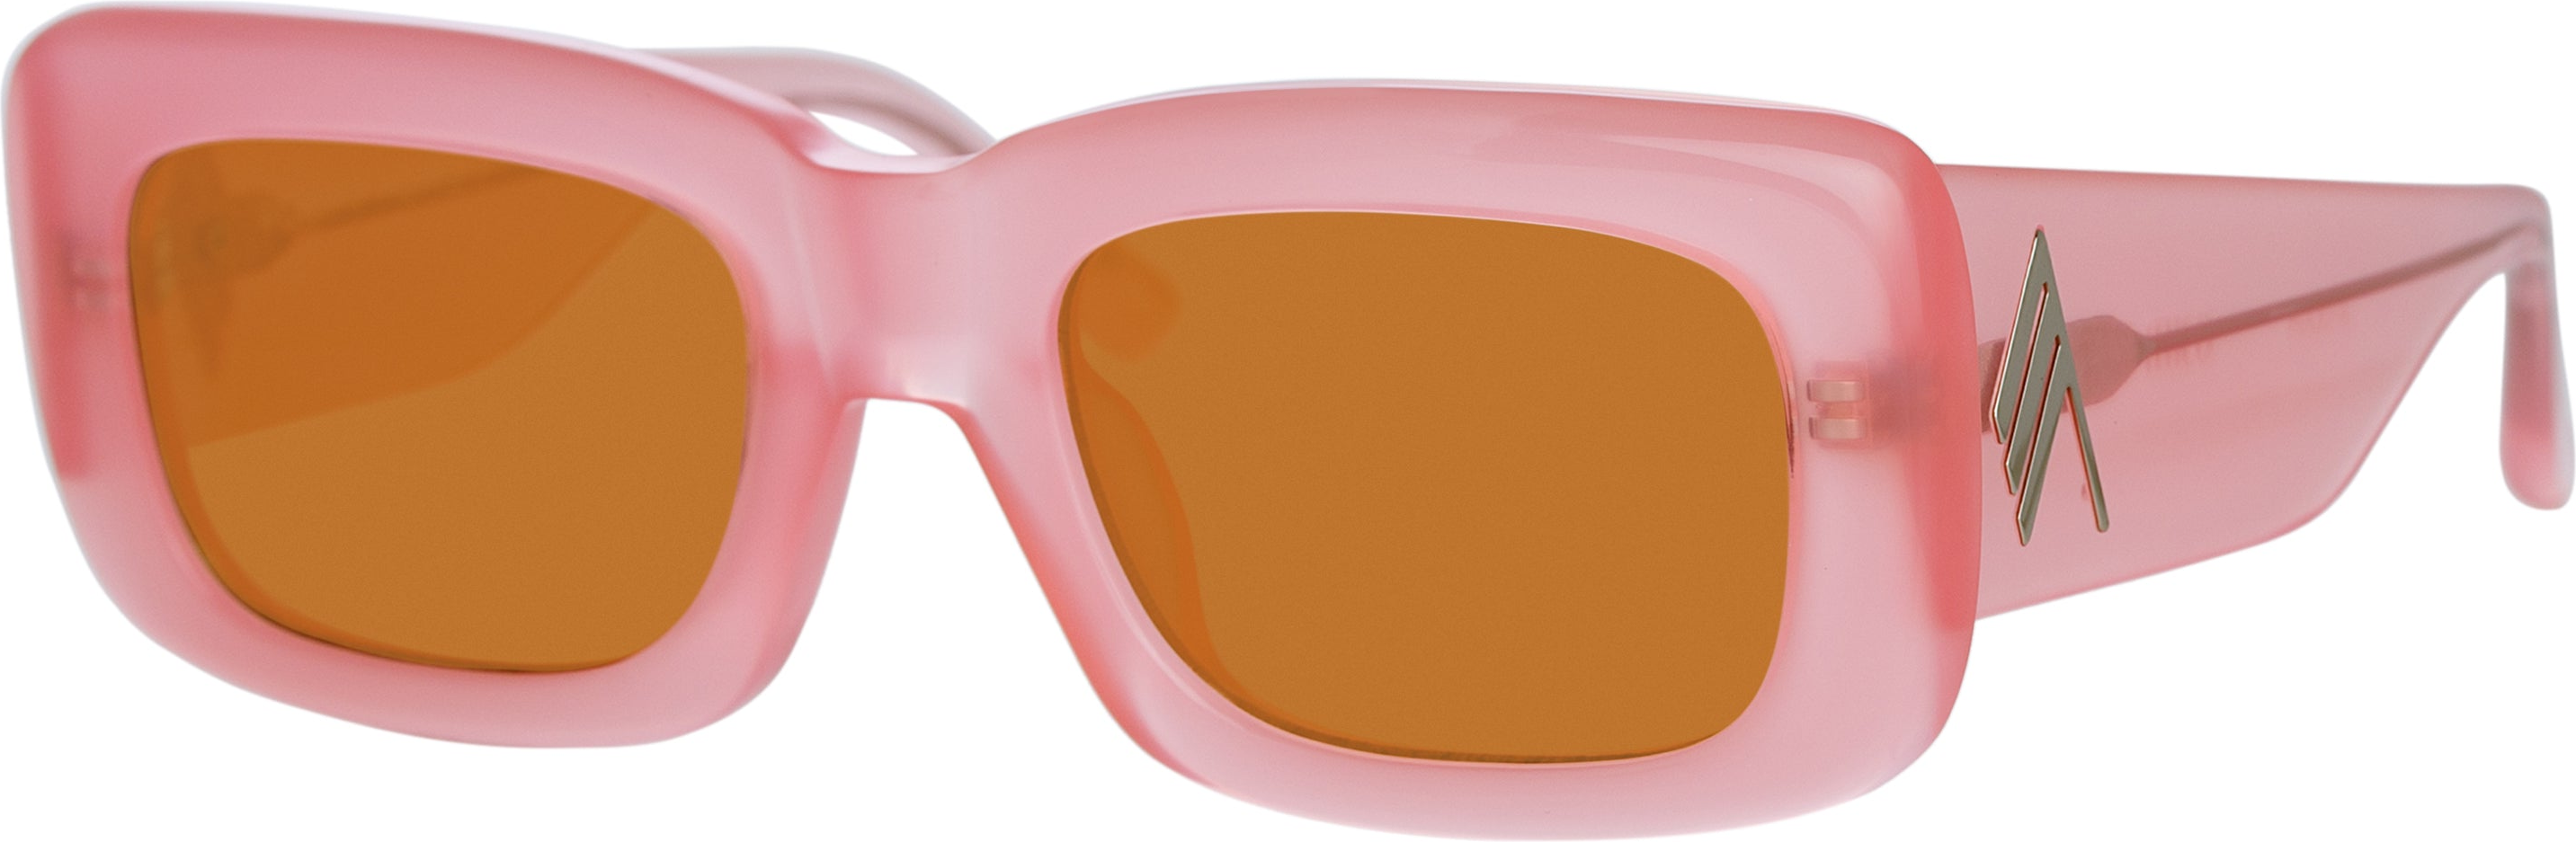 Color_ATTICO3C23SUN - The Attico Marfa Rectangular Sunglasses in Pink